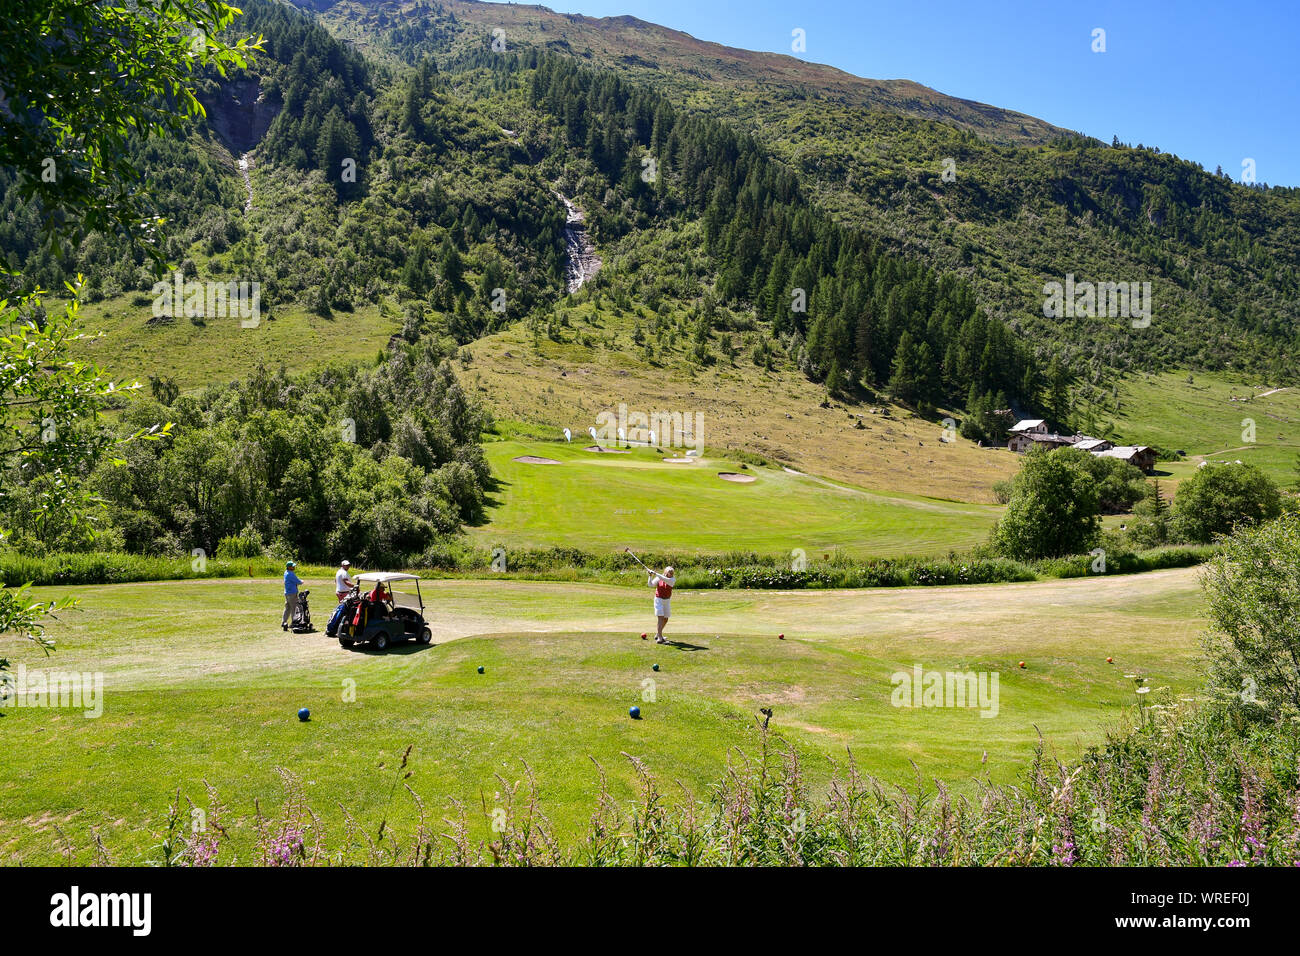 Vista panoramica sul campo da golf del Golf Club Courmayeur et Grandes  Jorasses in Val Ferret, con persone che giocano a golf in estate, Courmayeur,  Italia Foto stock - Alamy